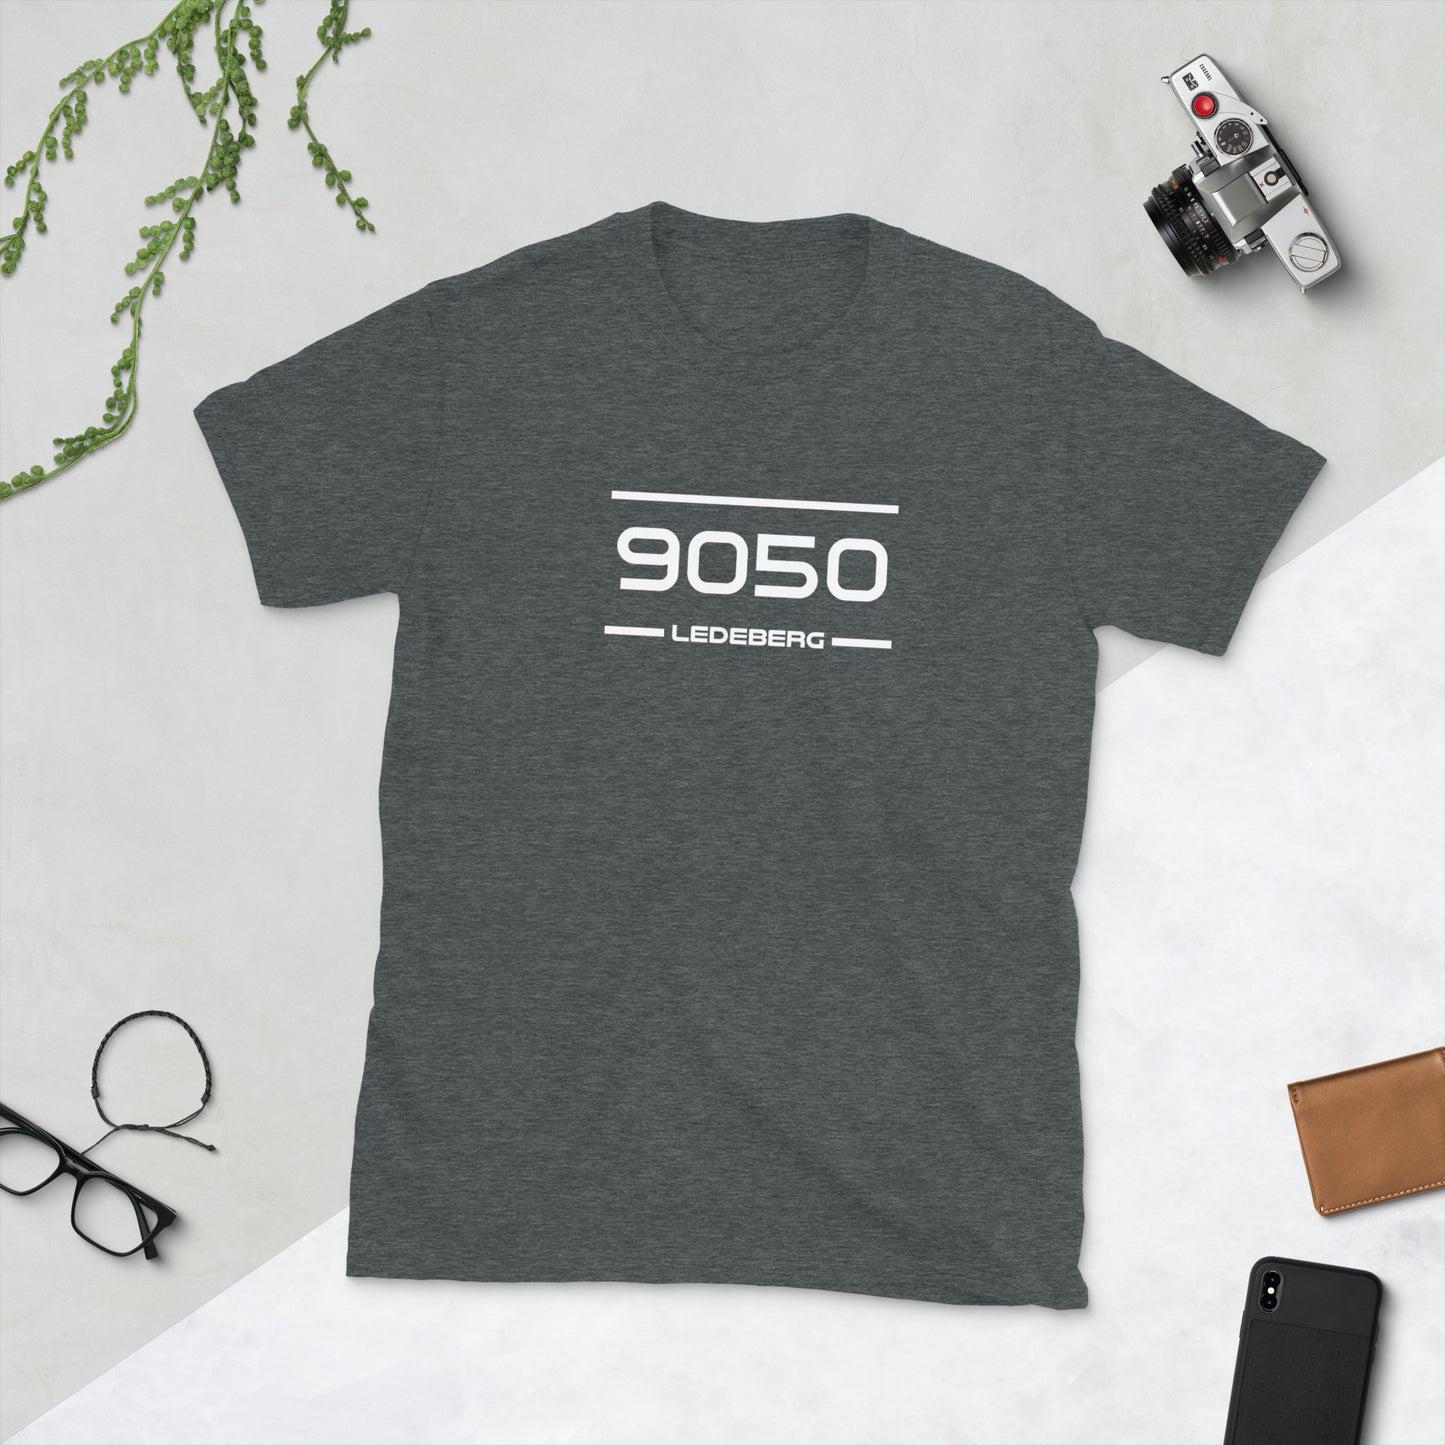 T-Shirt - 9050 - Ledeberg